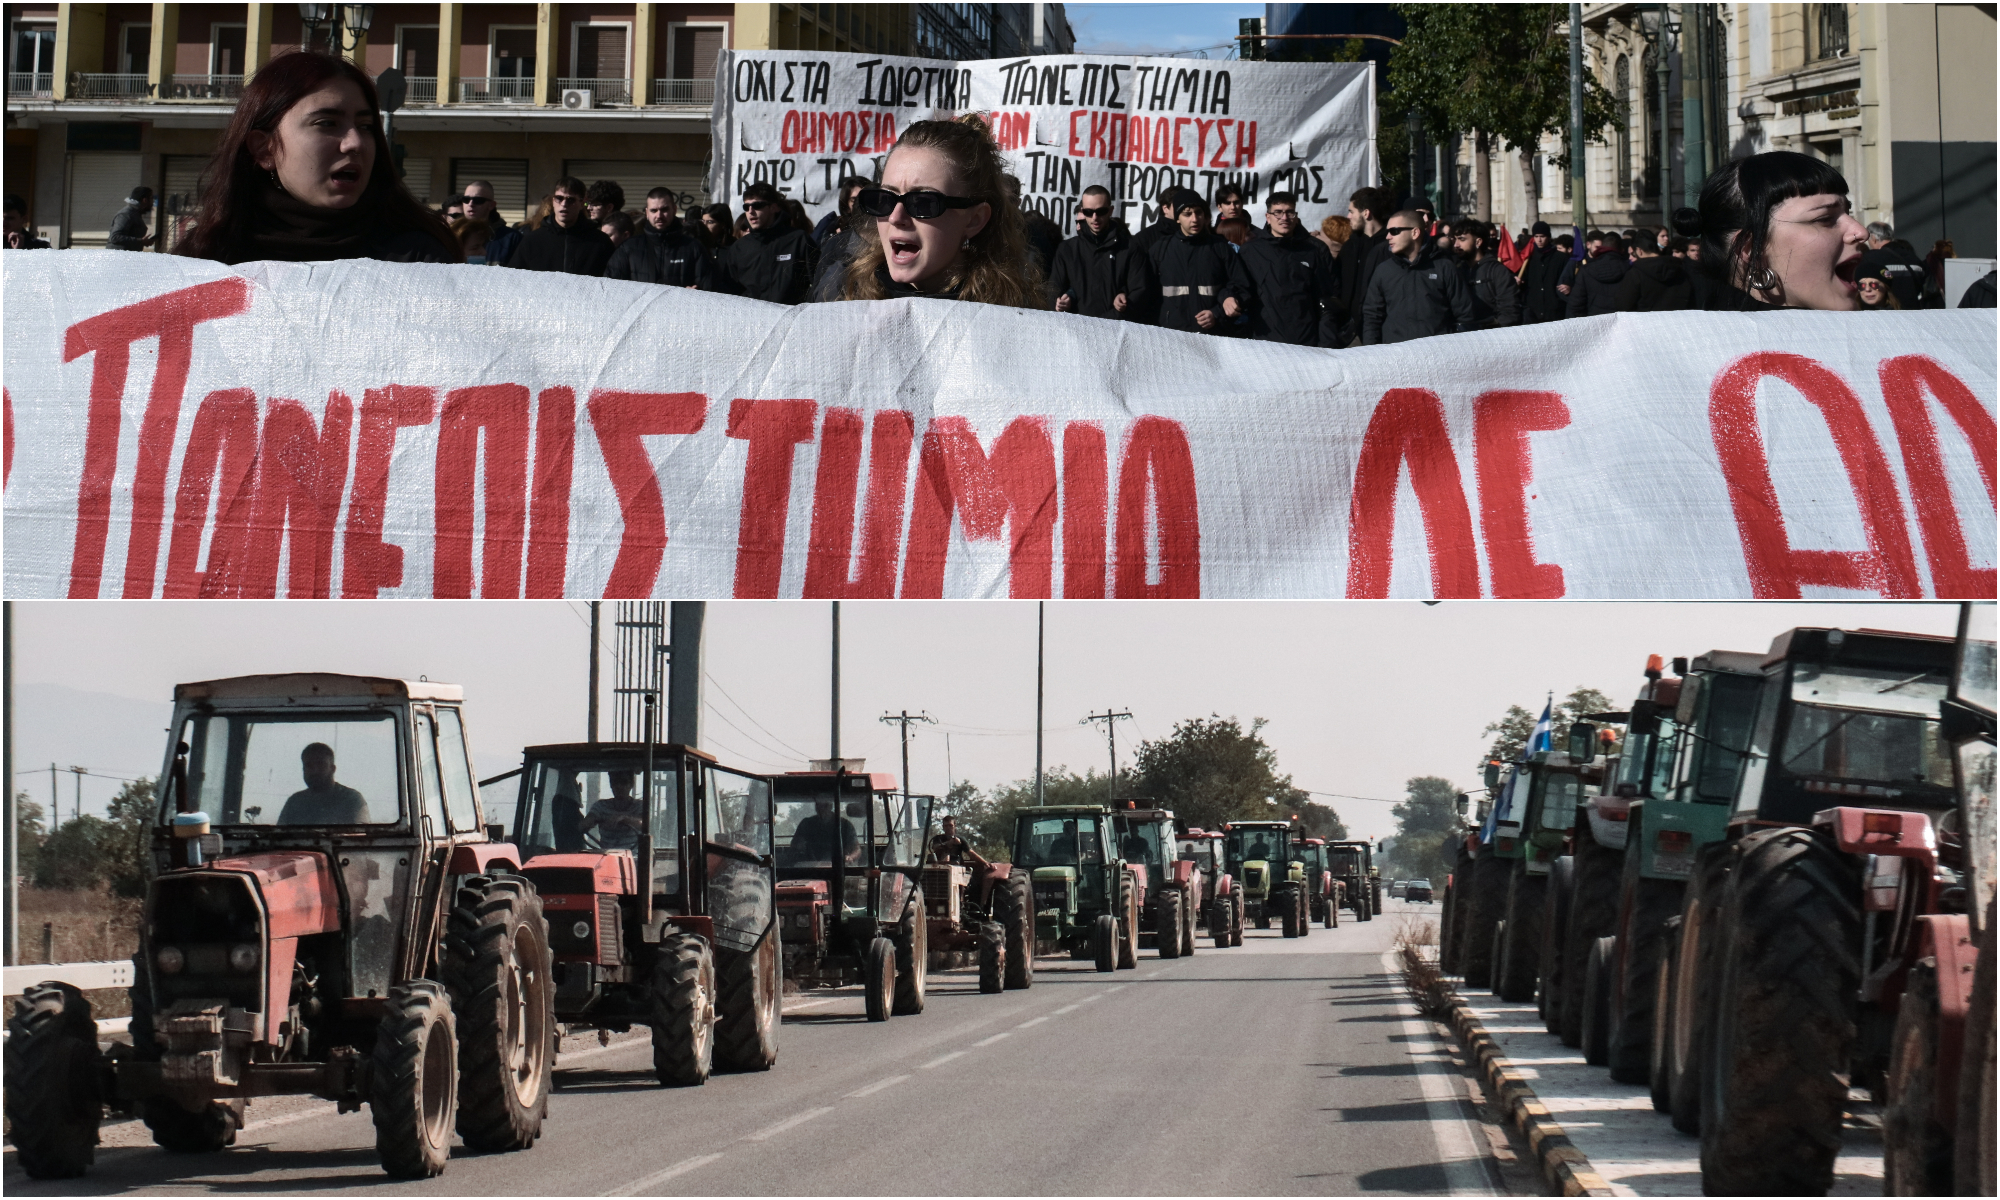 Πρώτα οι φοιτητές, τώρα οι αγρότες - Διευρύνεται το μέτωπο διαμαρτυρίας